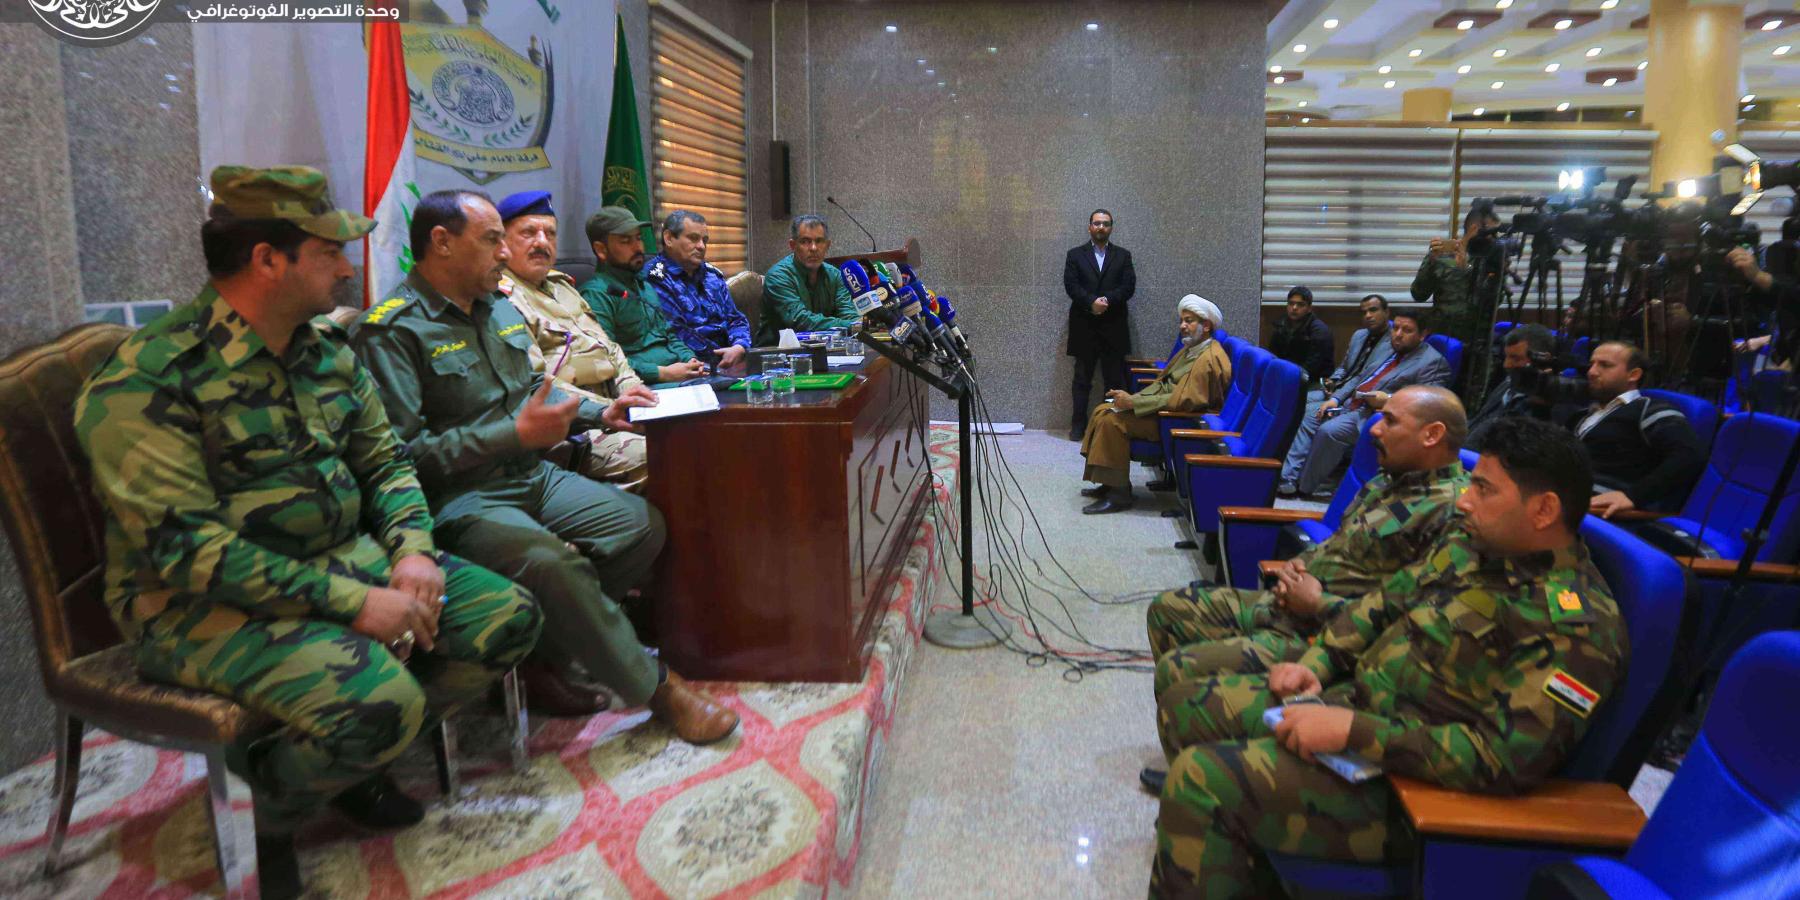 قيادة فرقة الإمام علي (عليه السلام) تعقد مؤتمر صحفي لتبيان الوضع الميداني العام للفرقة القتالية